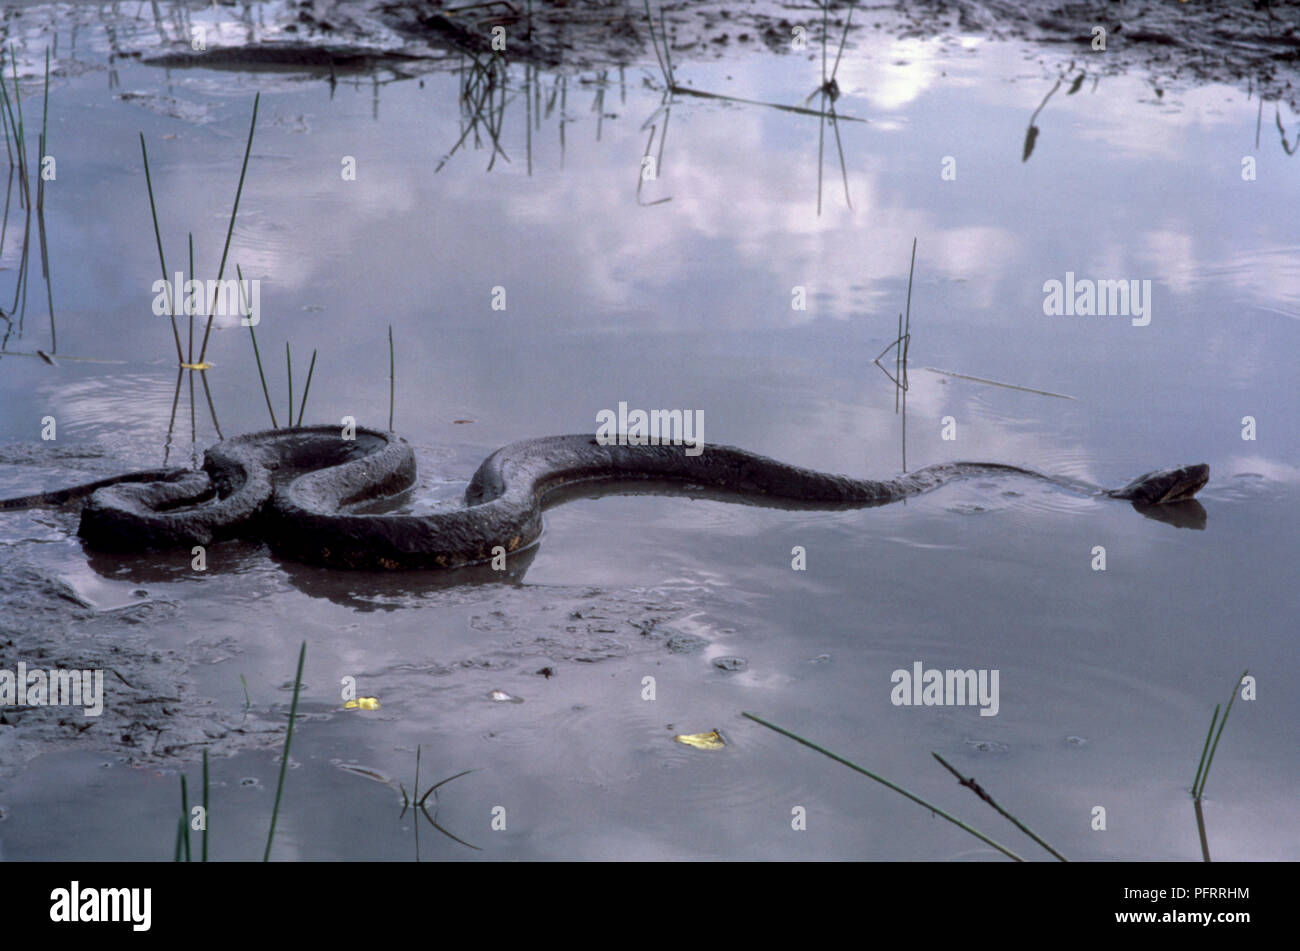 Snake wriggling through water Stock Photo